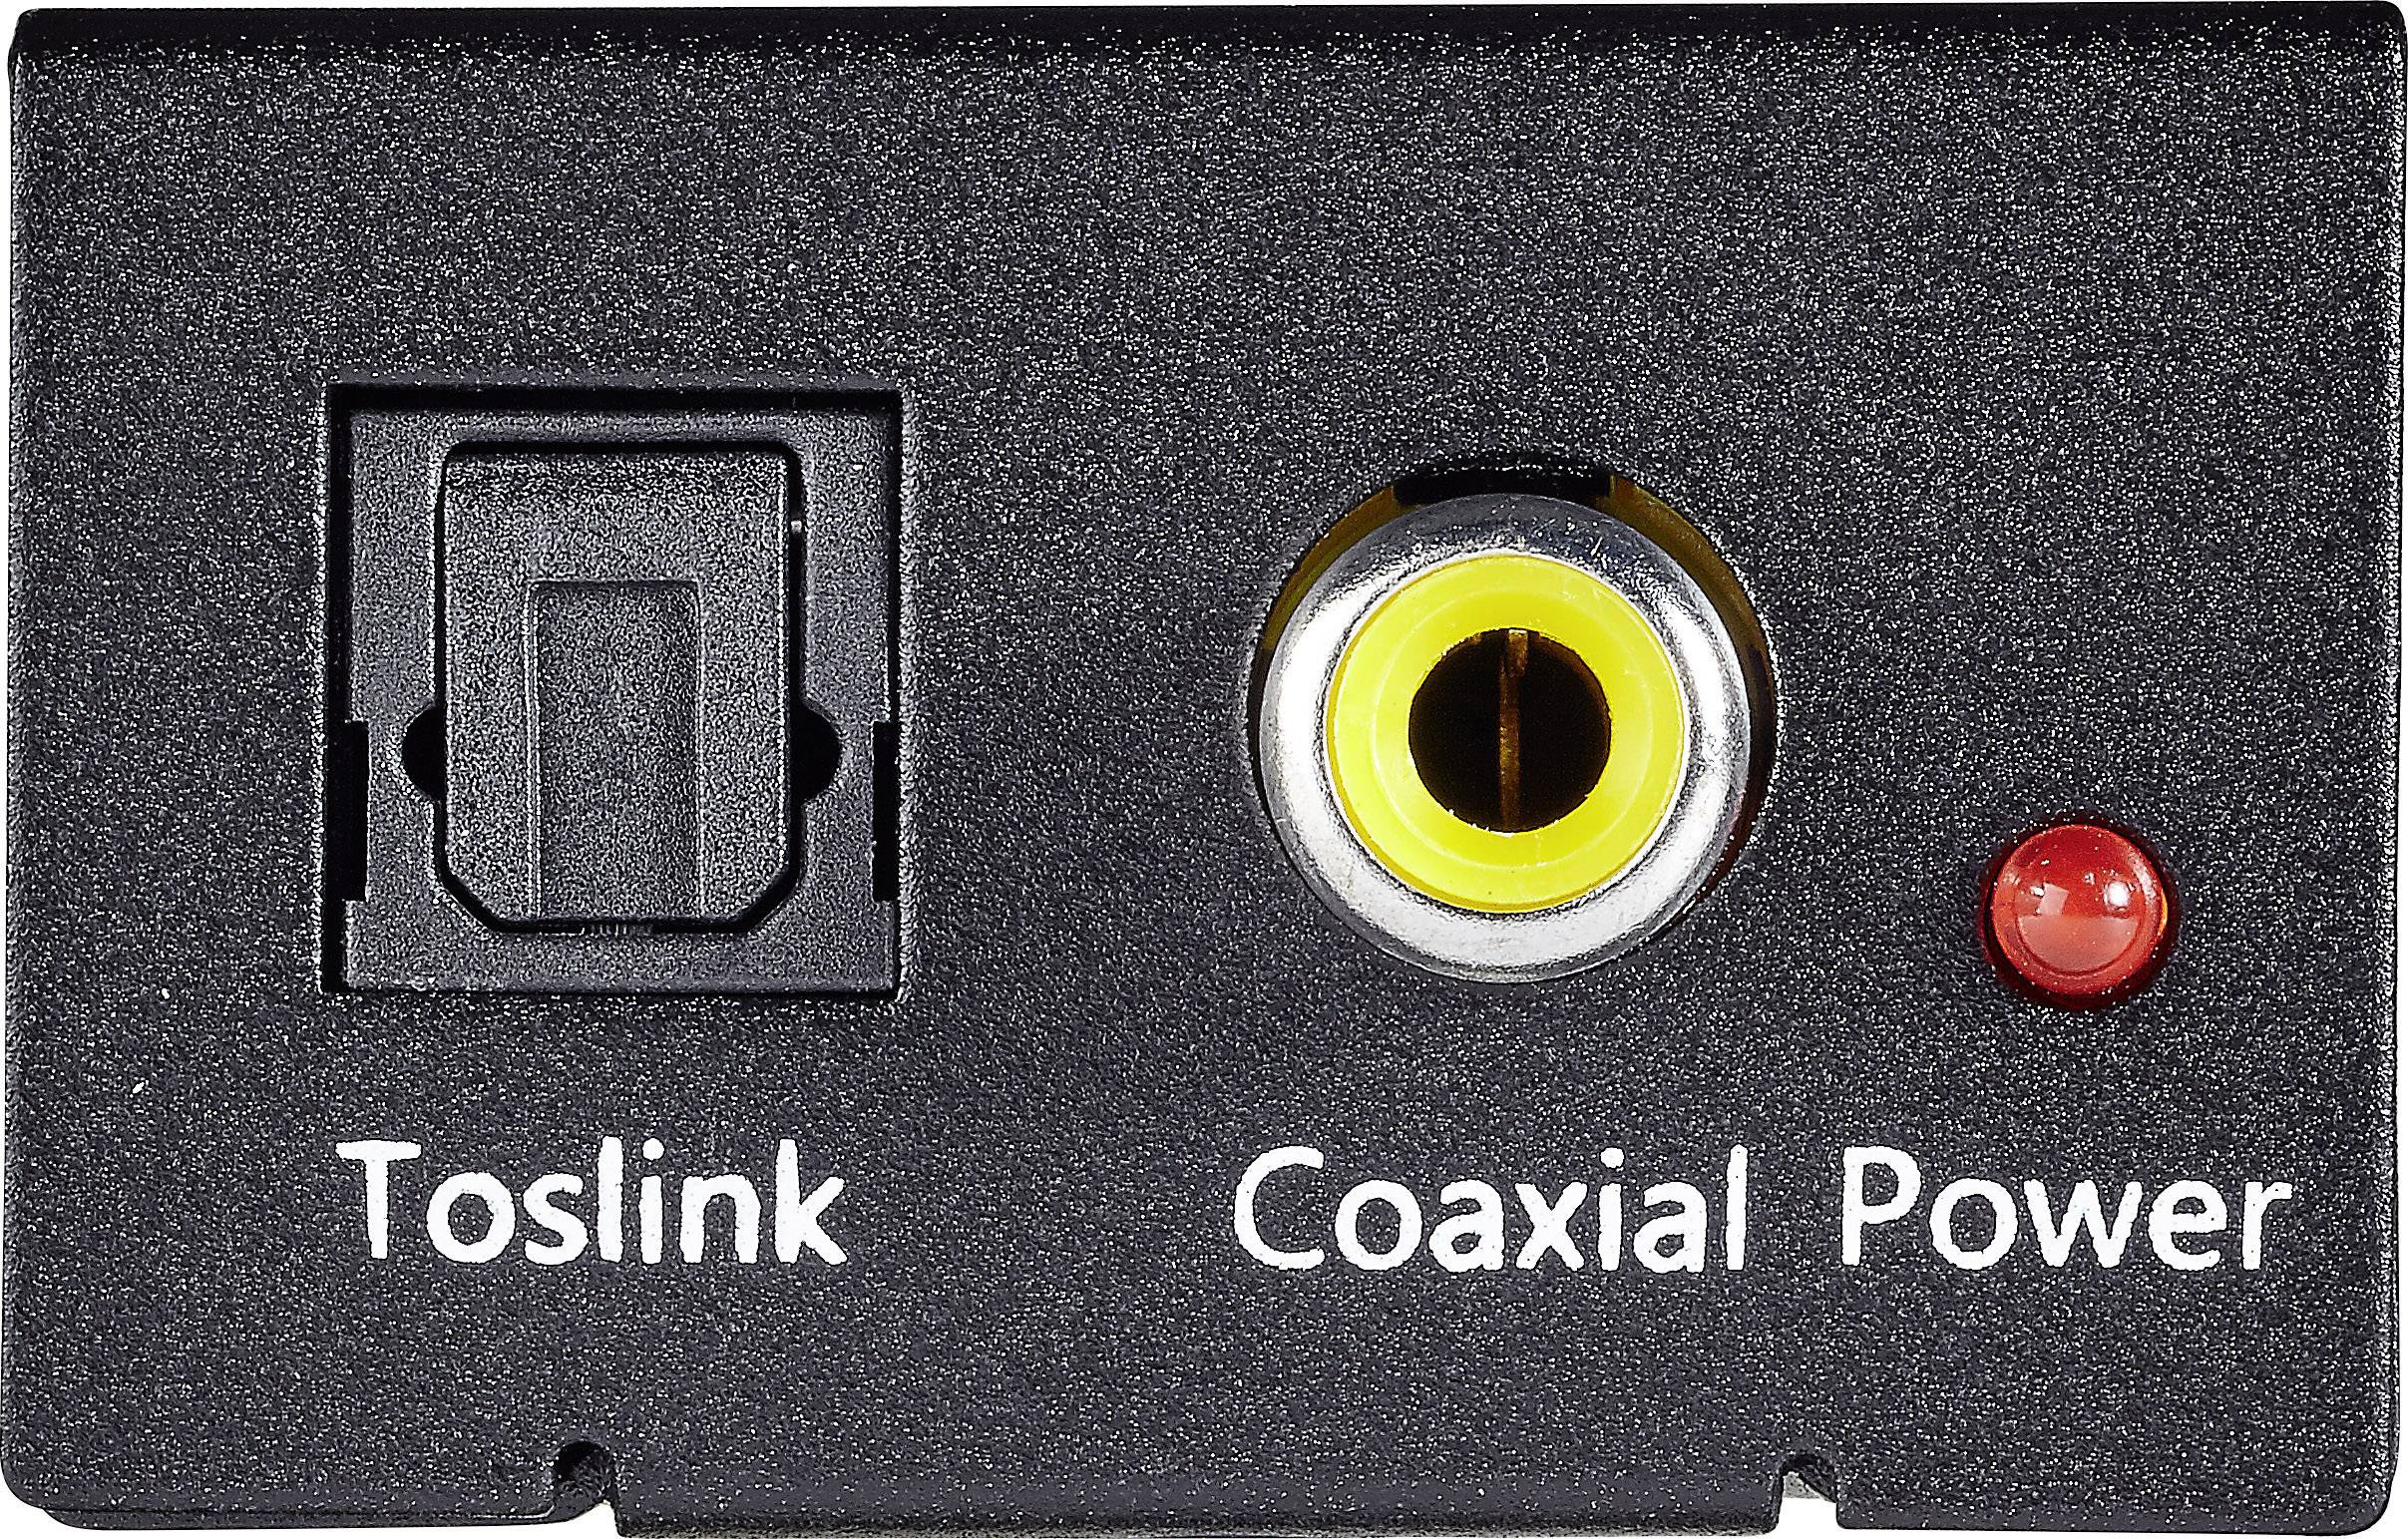 Spdif optical. Toslink (s/PDIF оптический). Toslink x96s. Toslink s/PDIF разъем. RCA (S/PDIF коаксиальный).